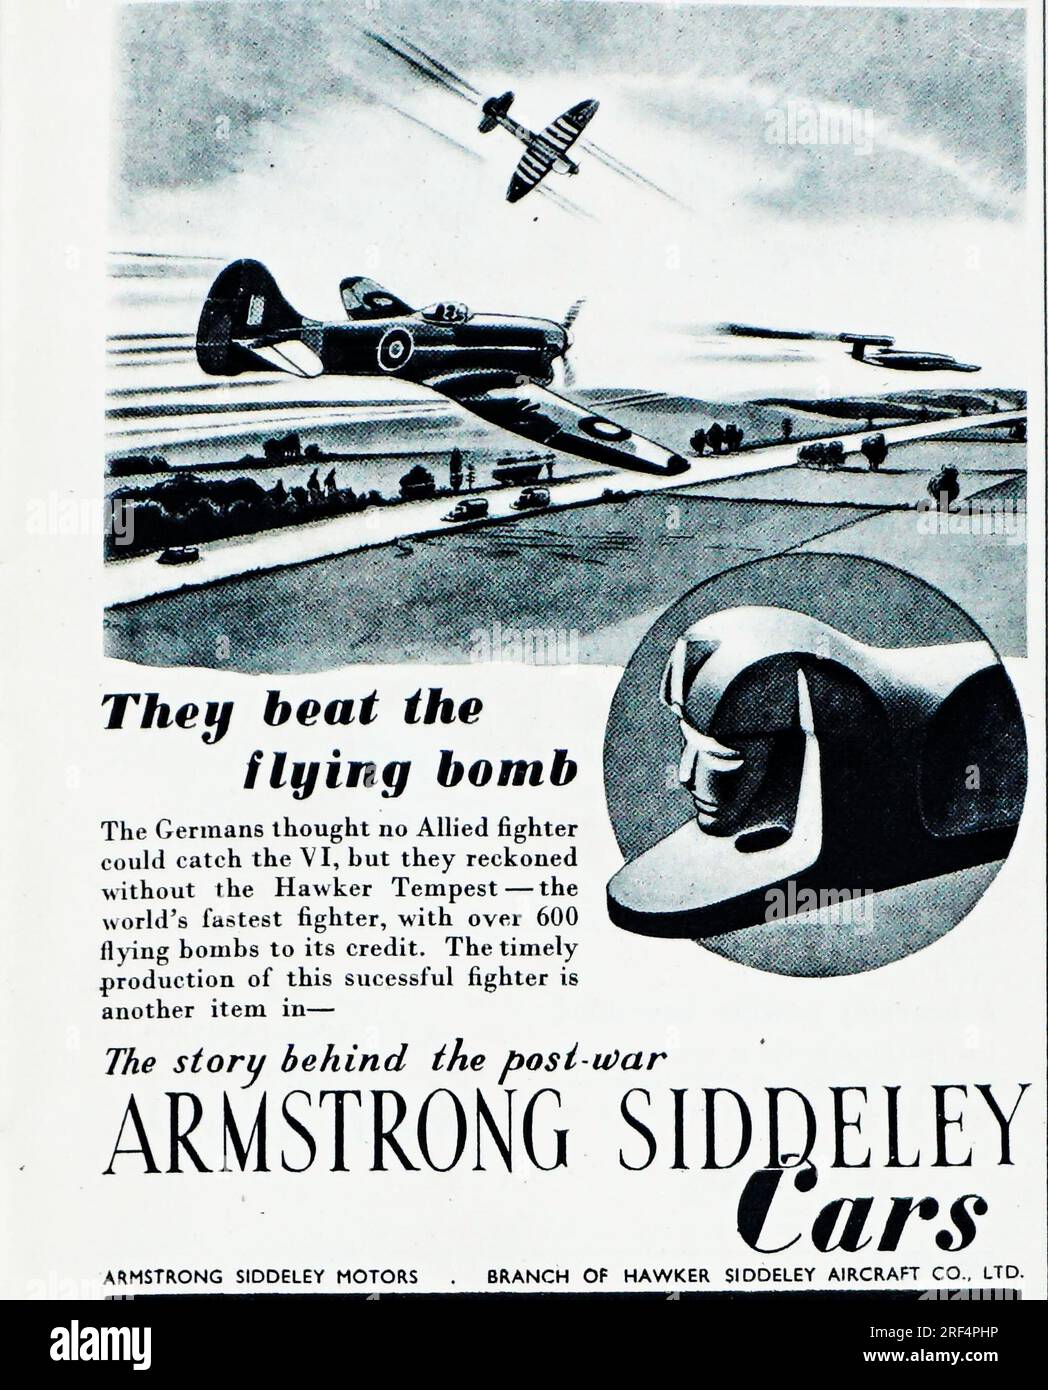 Eine 1945 Werbung für Armstrong Siddeley Cars, eine Niederlassung von Armstrong Siddeley Aircraft. In der Werbung wird der Hawker Tempest erwähnt, das schnellste Flugzeug der Welt. „Die Deutschen dachten, kein alliierter Kämpfer könne den V1 erreichen, rechneten aber ohne den Hawker Tempest.“ Zu den berühmten Autos der Gruppe gehörten der Lancaster Saloon und die Hurricane Coupe. Die Automobilproduktion wurde 1960 eingestellt. Stockfoto